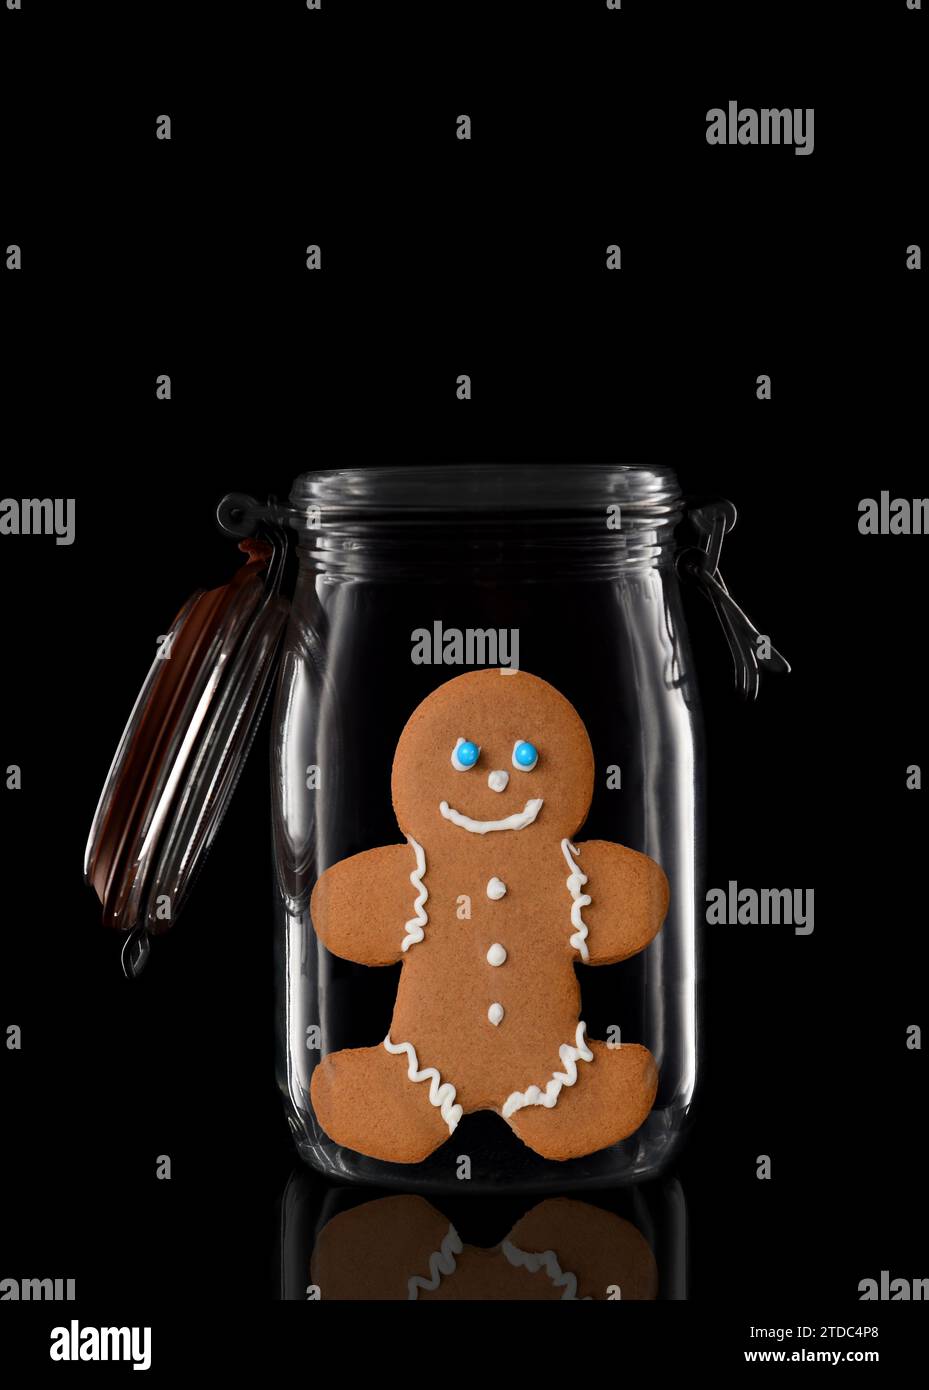 Un pot de stockage ou de mise en conserve en verre avec un biscuit Gingerbread Man décoré isolé sur noir avec réflexion, avec couvercle ouvert. Banque D'Images